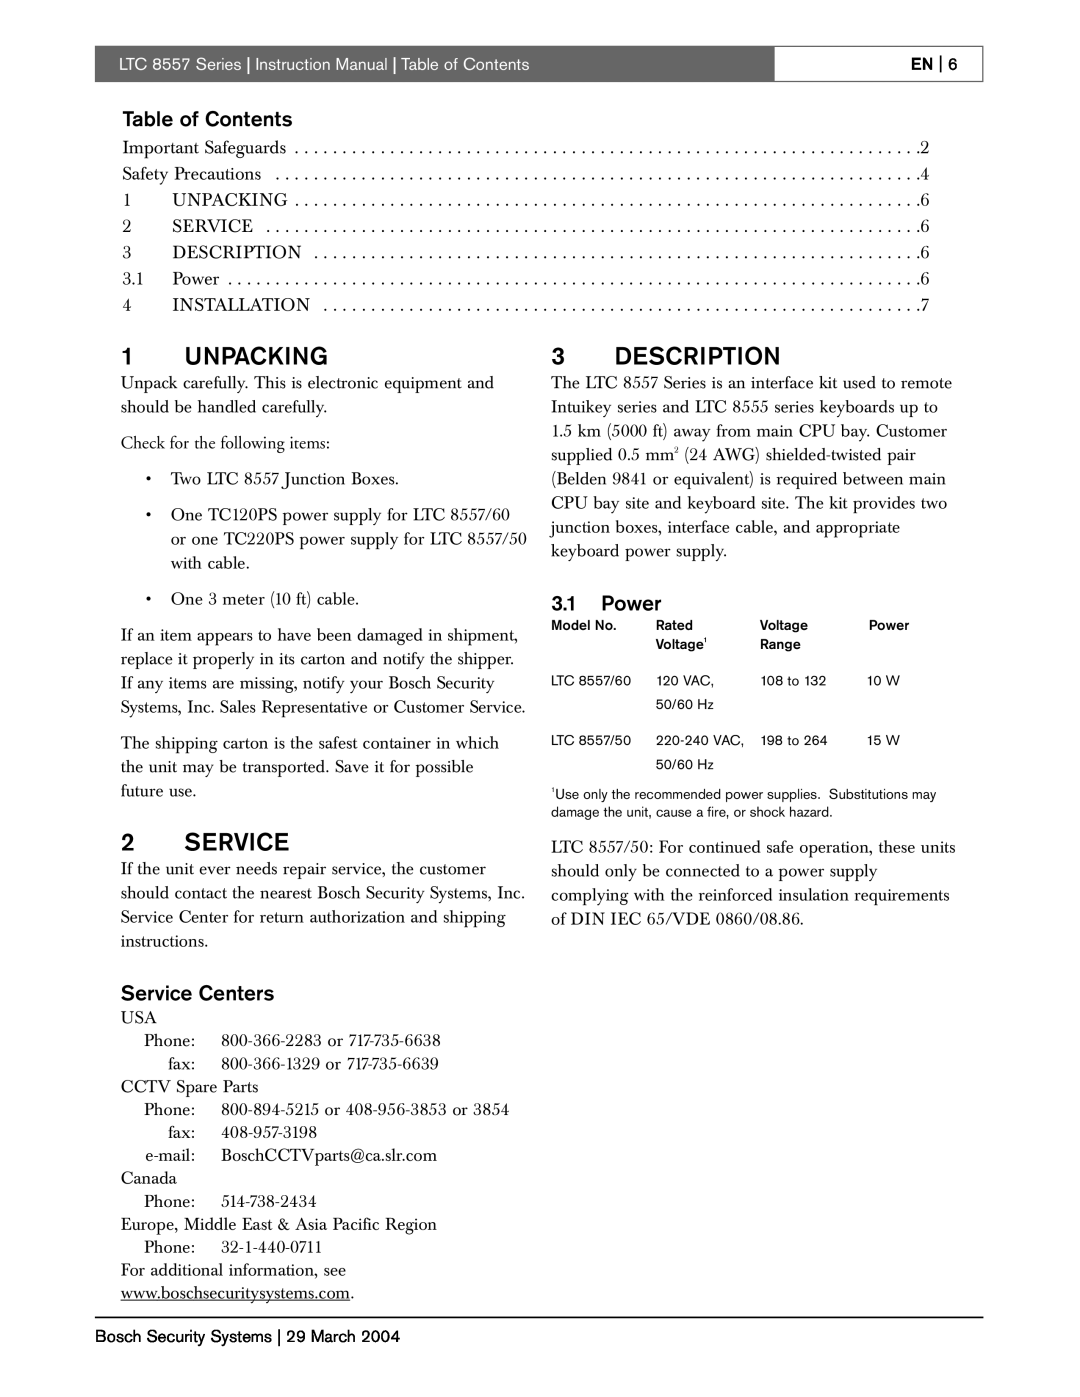 Bosch Appliances LTC 8557 Series instruction manual Unpacking, Description, Table of Contents, Power, Service Centers 